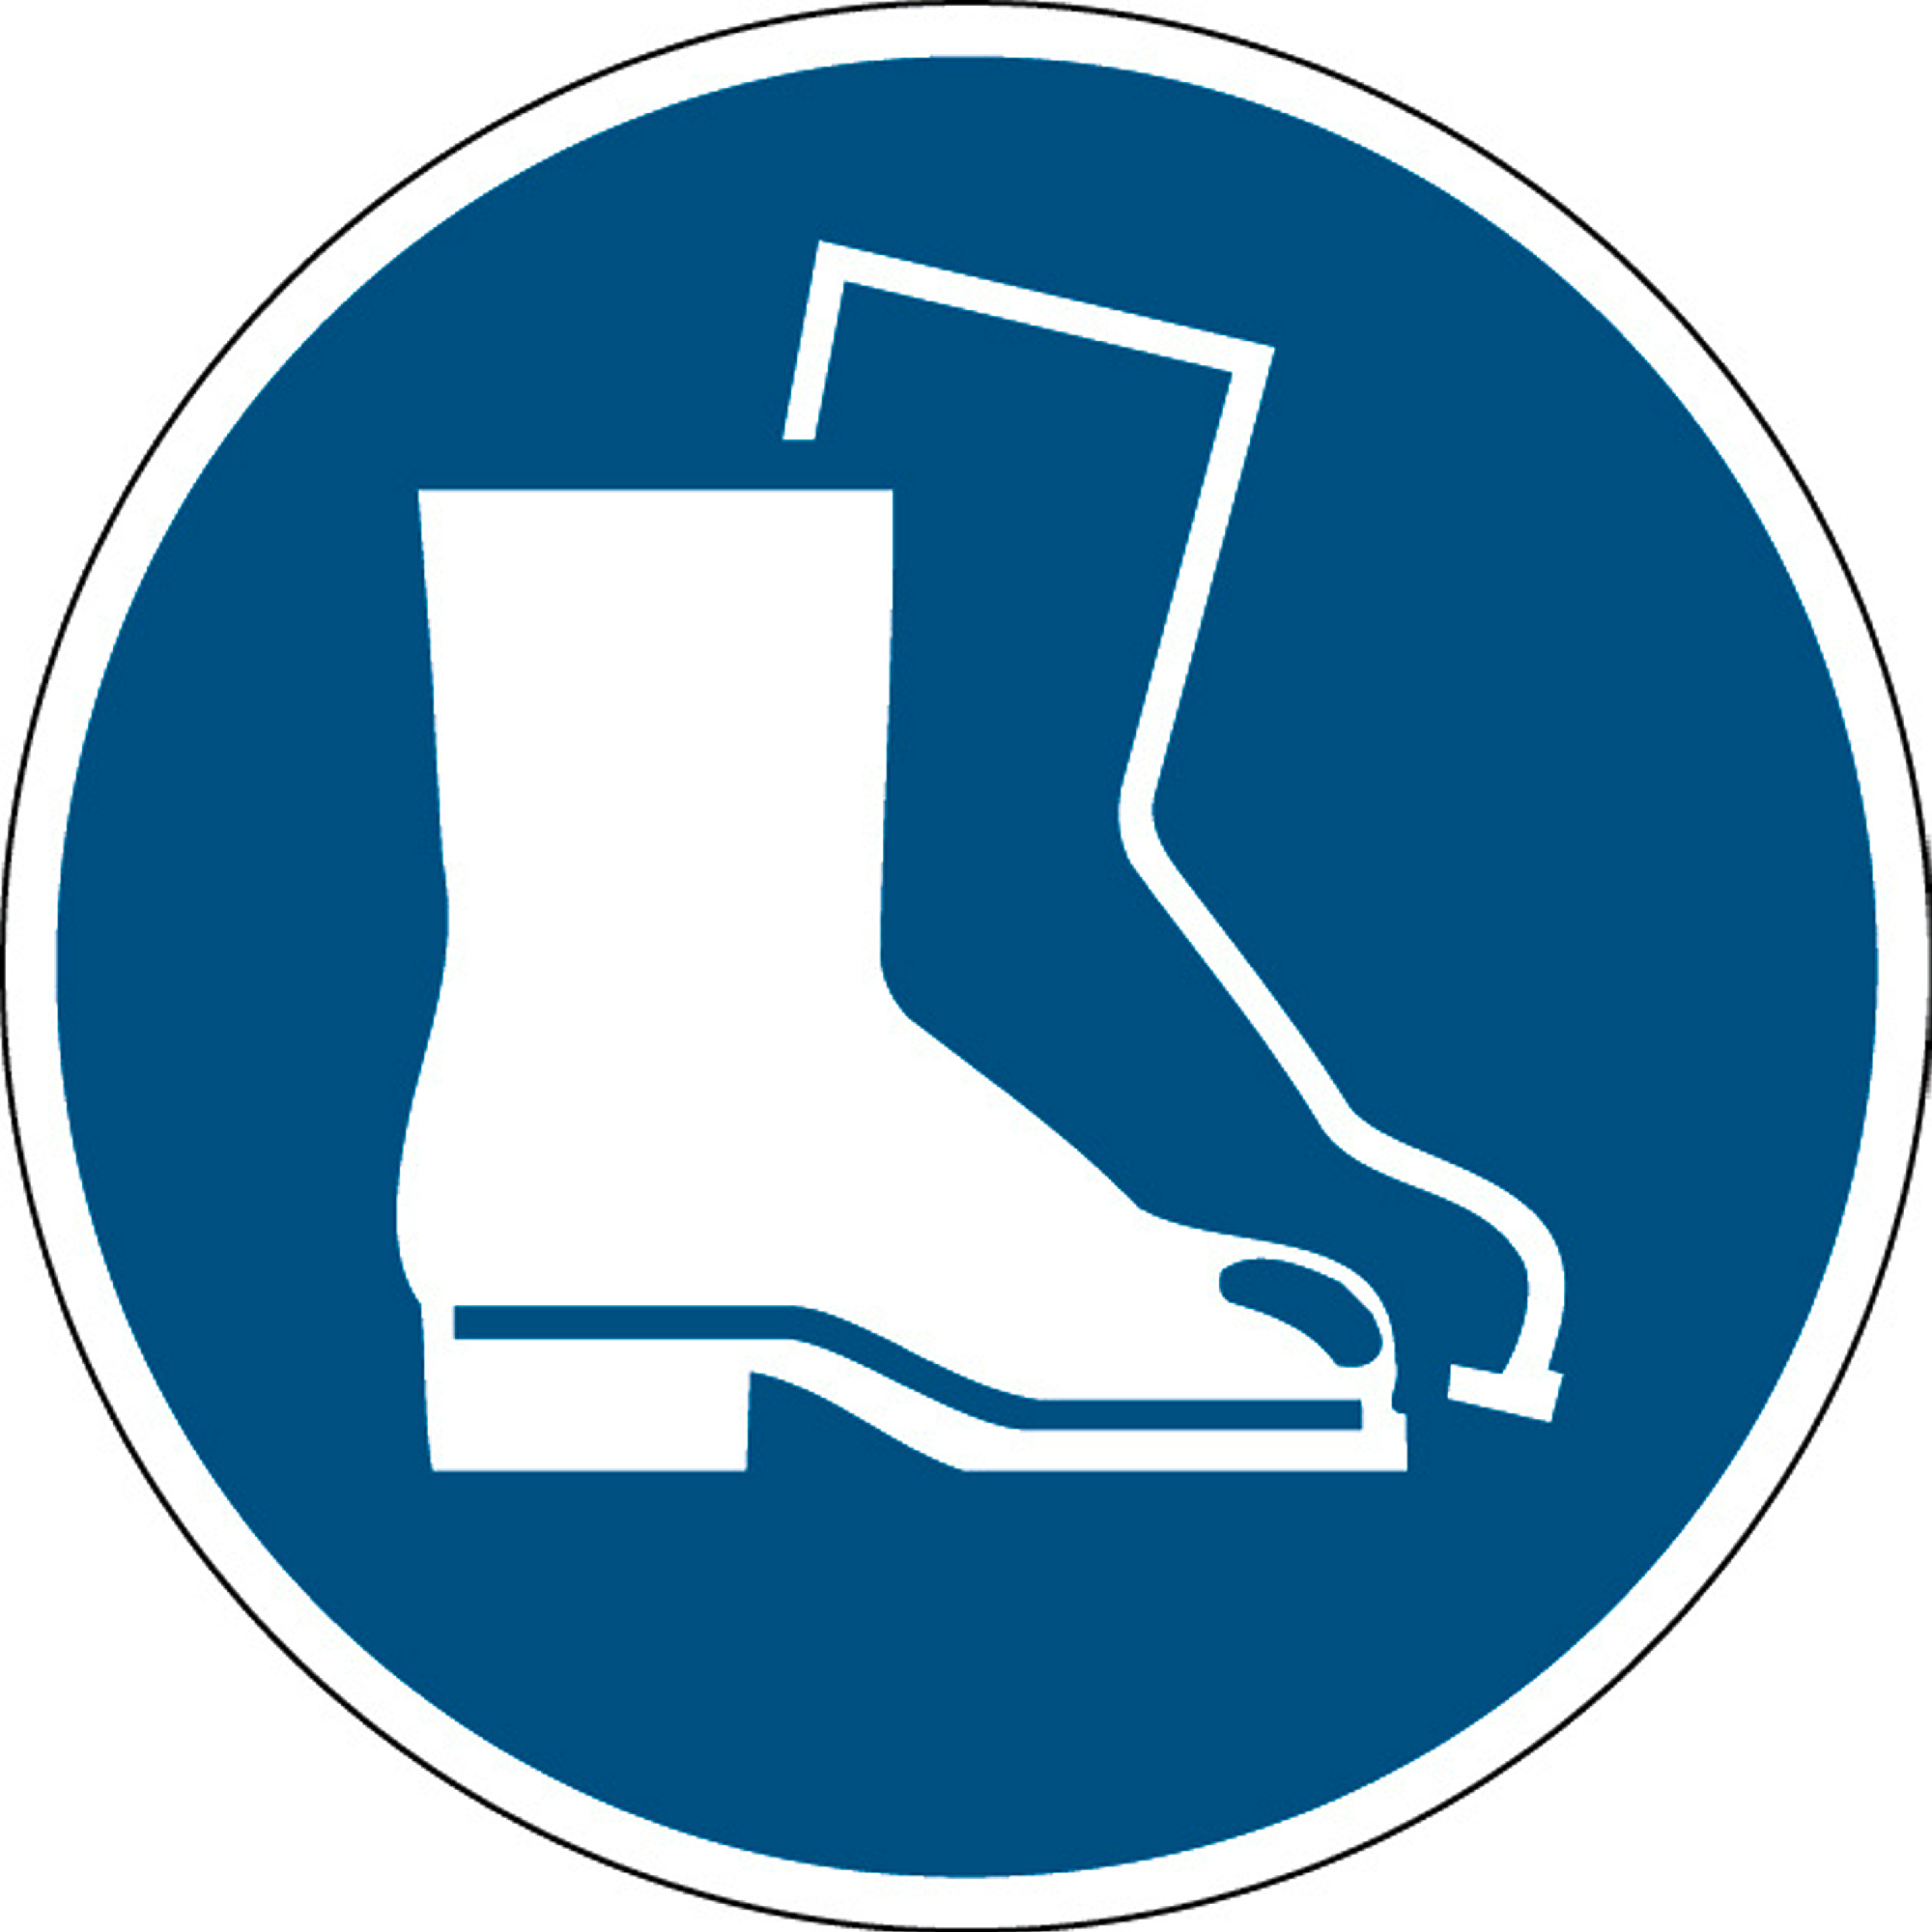 Použij ochrannou obuv - značka, PES, samolepicí, Ø 100 mm